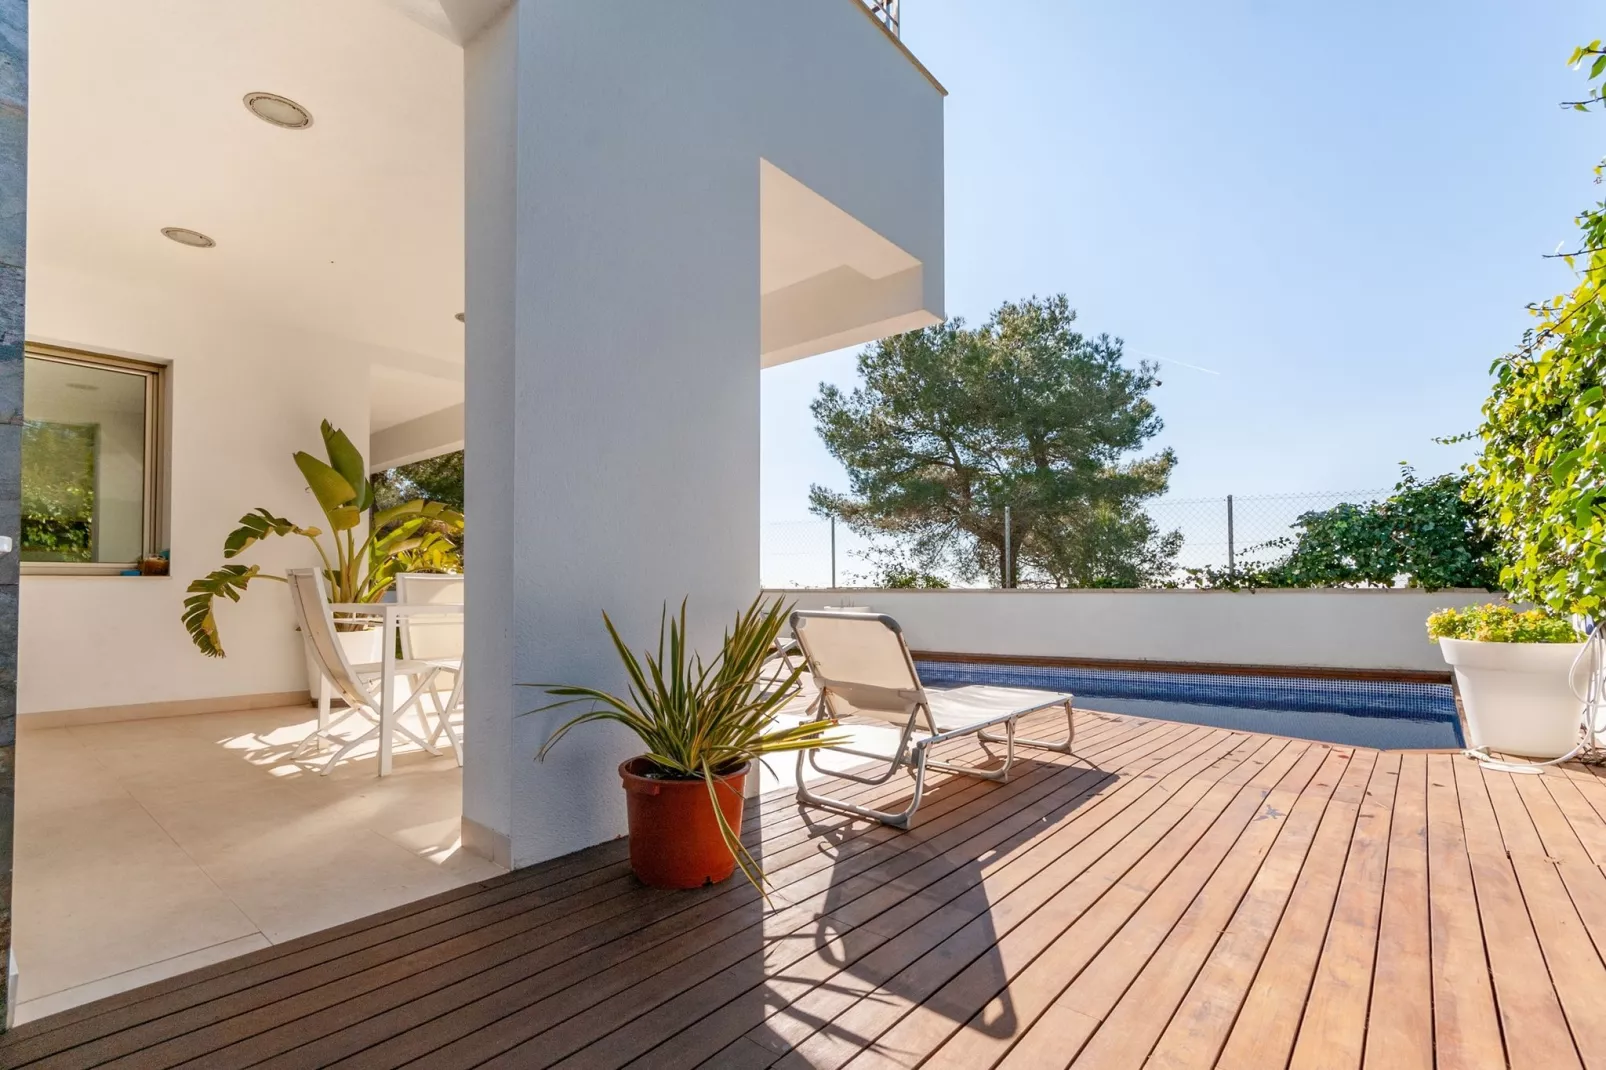 Prachtige villa met zwembad en prachtig uitzicht op zee dichtbij Barcelona-Tuinen zomer